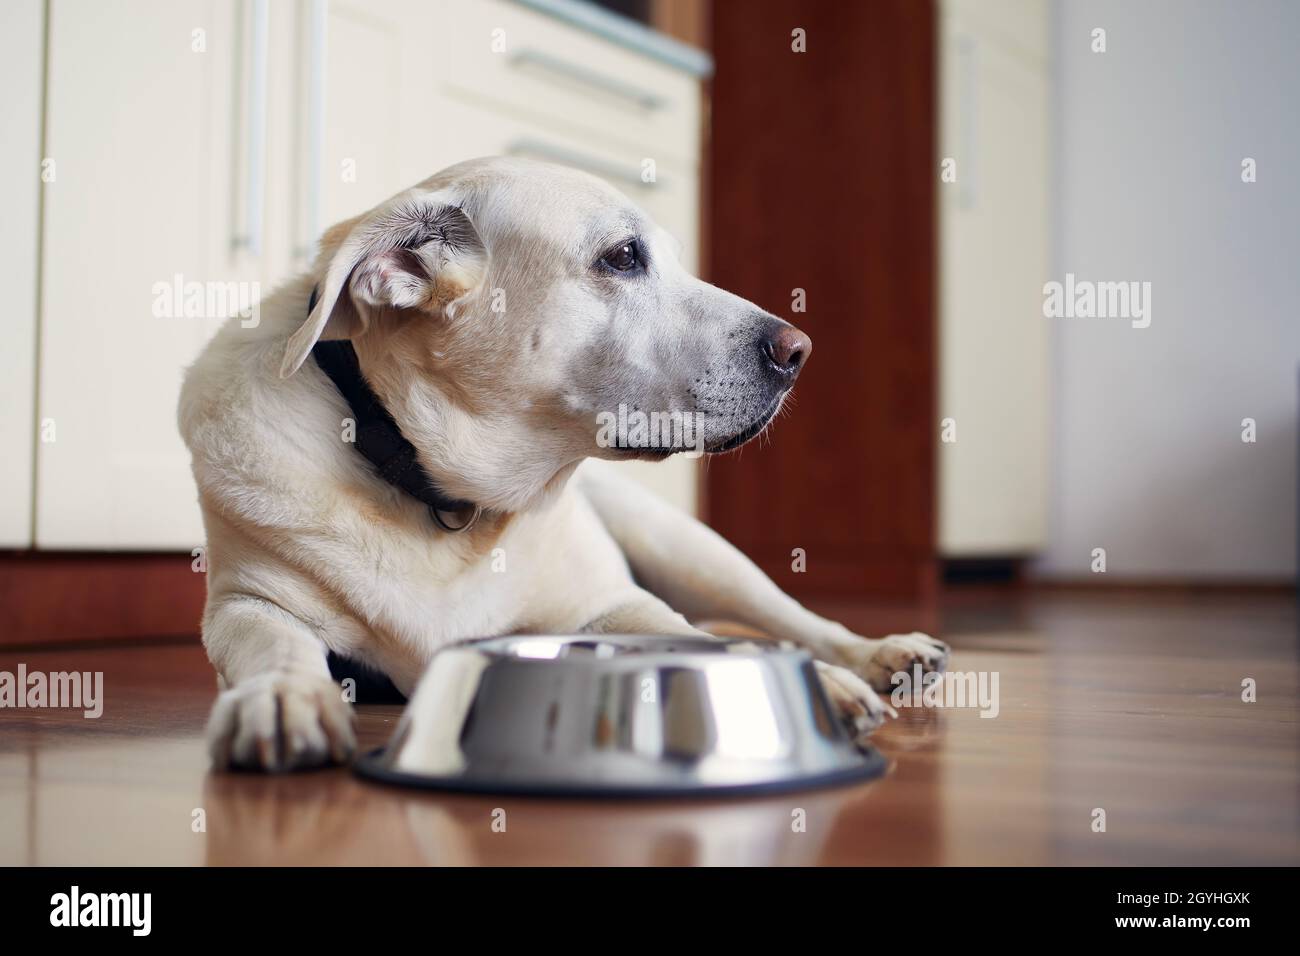 Alter Hund wartet auf Fütterung. Labrador Retriever liegt in der Nähe einer leeren Schüssel in der Wohnküche. Stockfoto